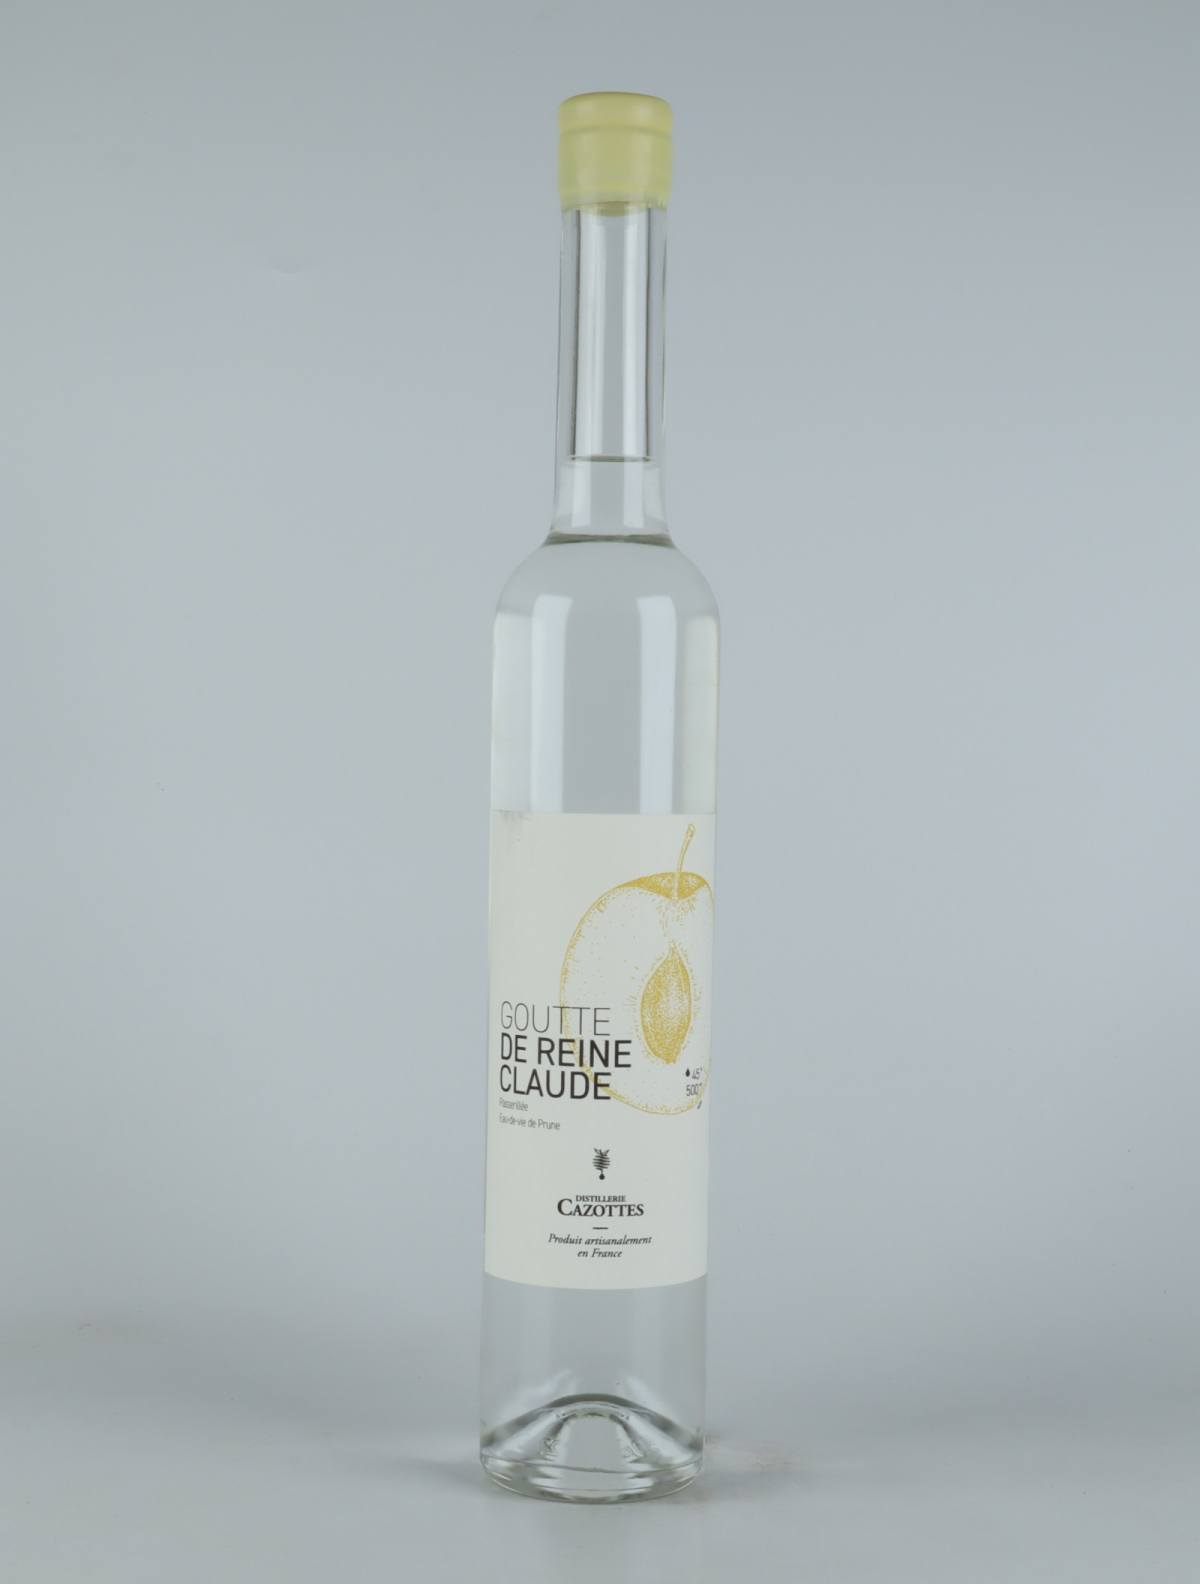 A bottle 2021 Reine Claude Dorée - Eau de Vie Spirits from Laurent Cazottes, Tarn in France